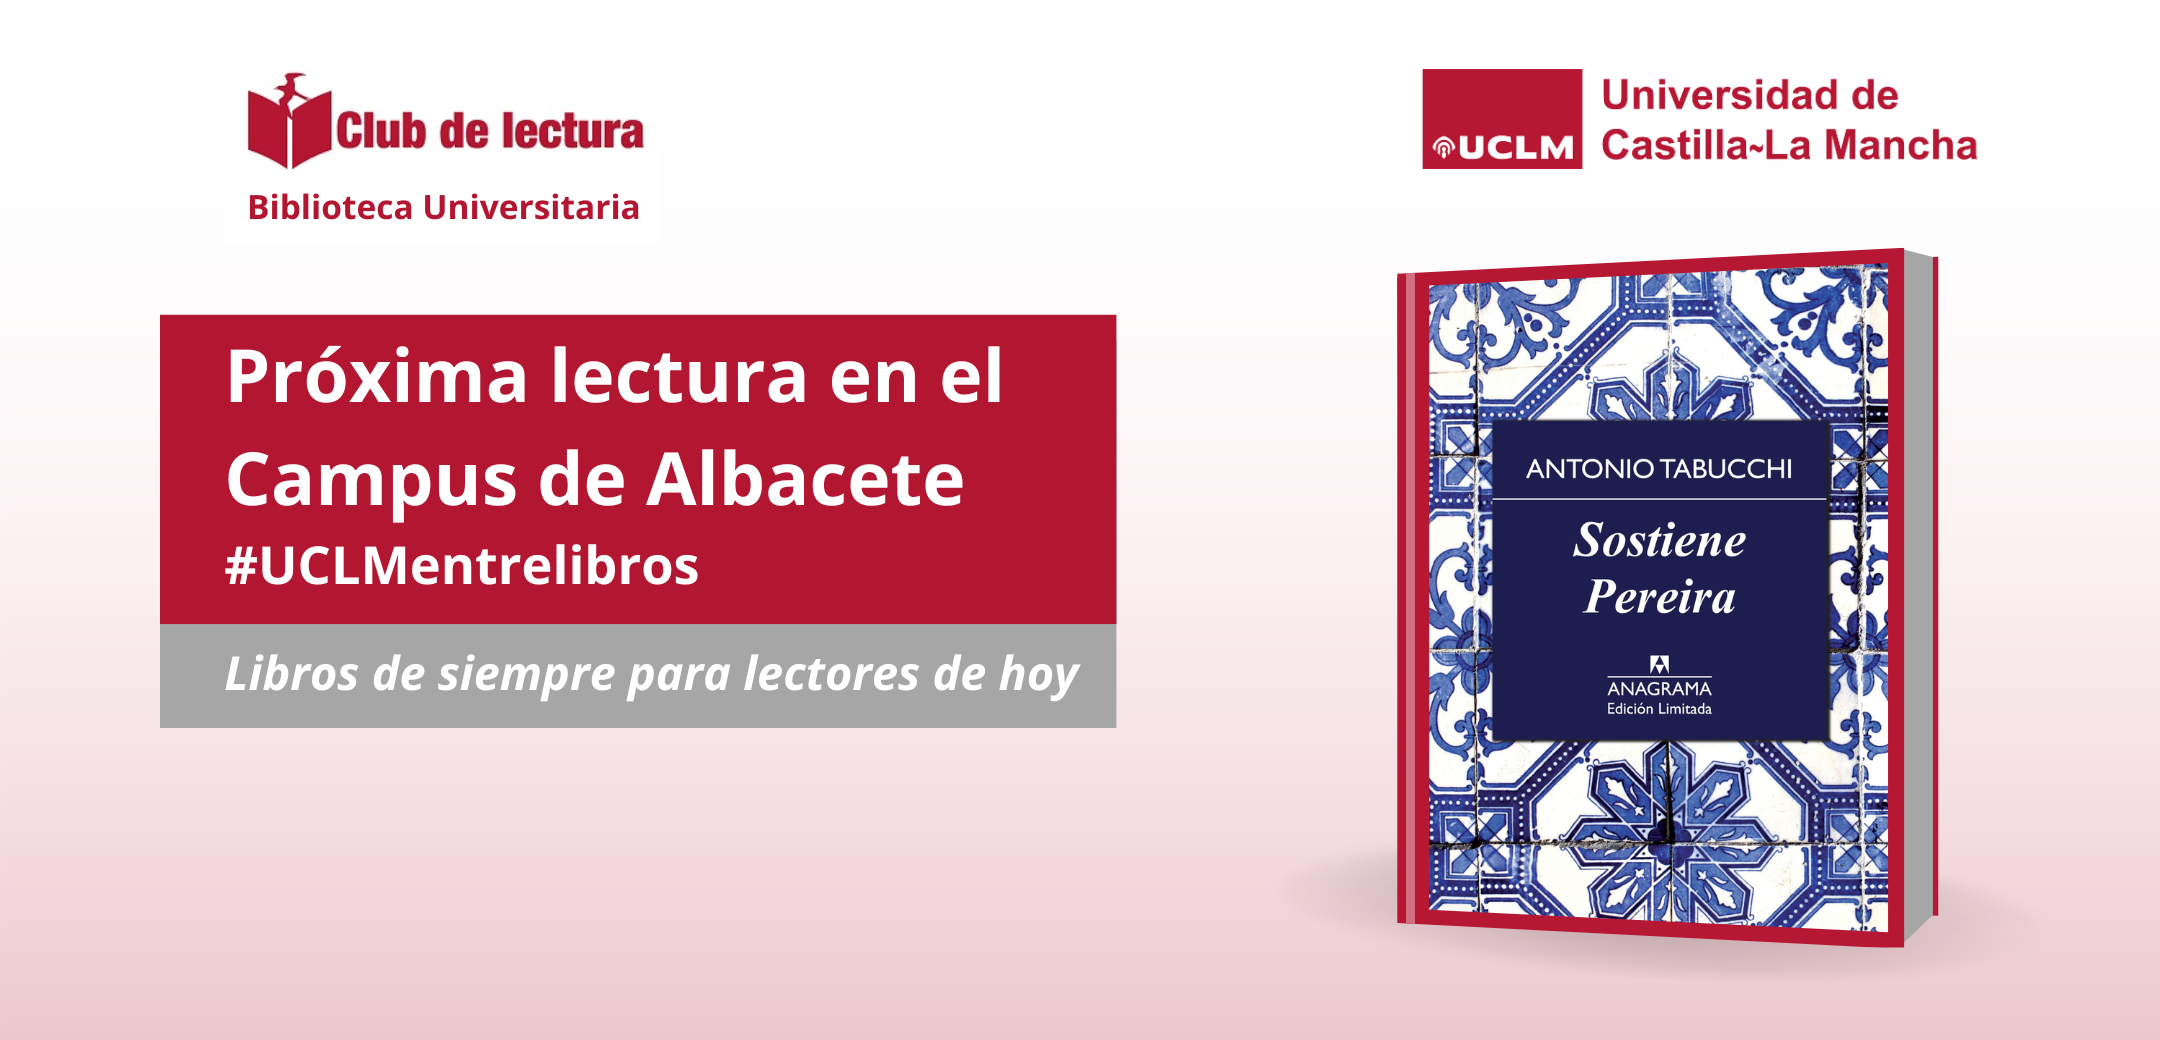 Club de lectura del campus de Albacete